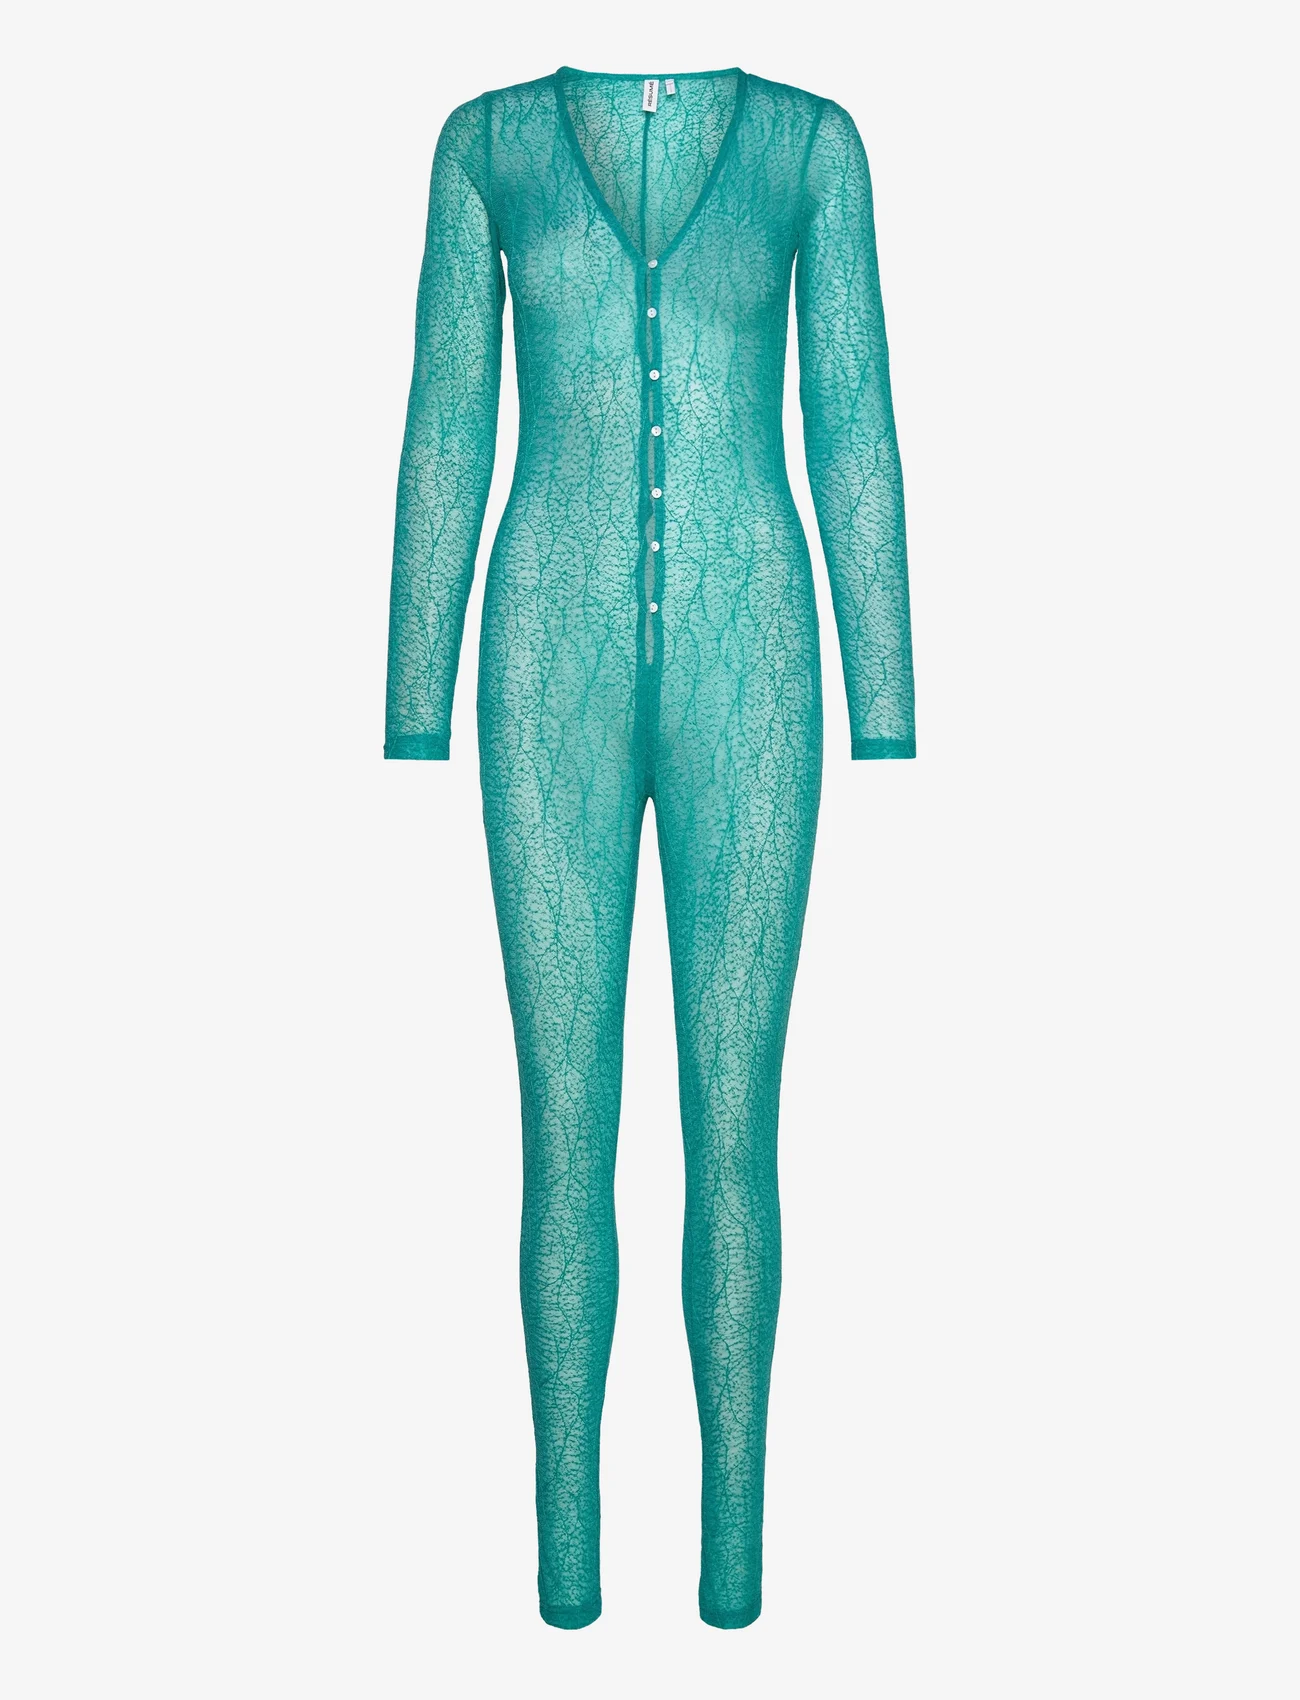 Résumé - RubenaRS Bodysuit - women - turquoise - 0